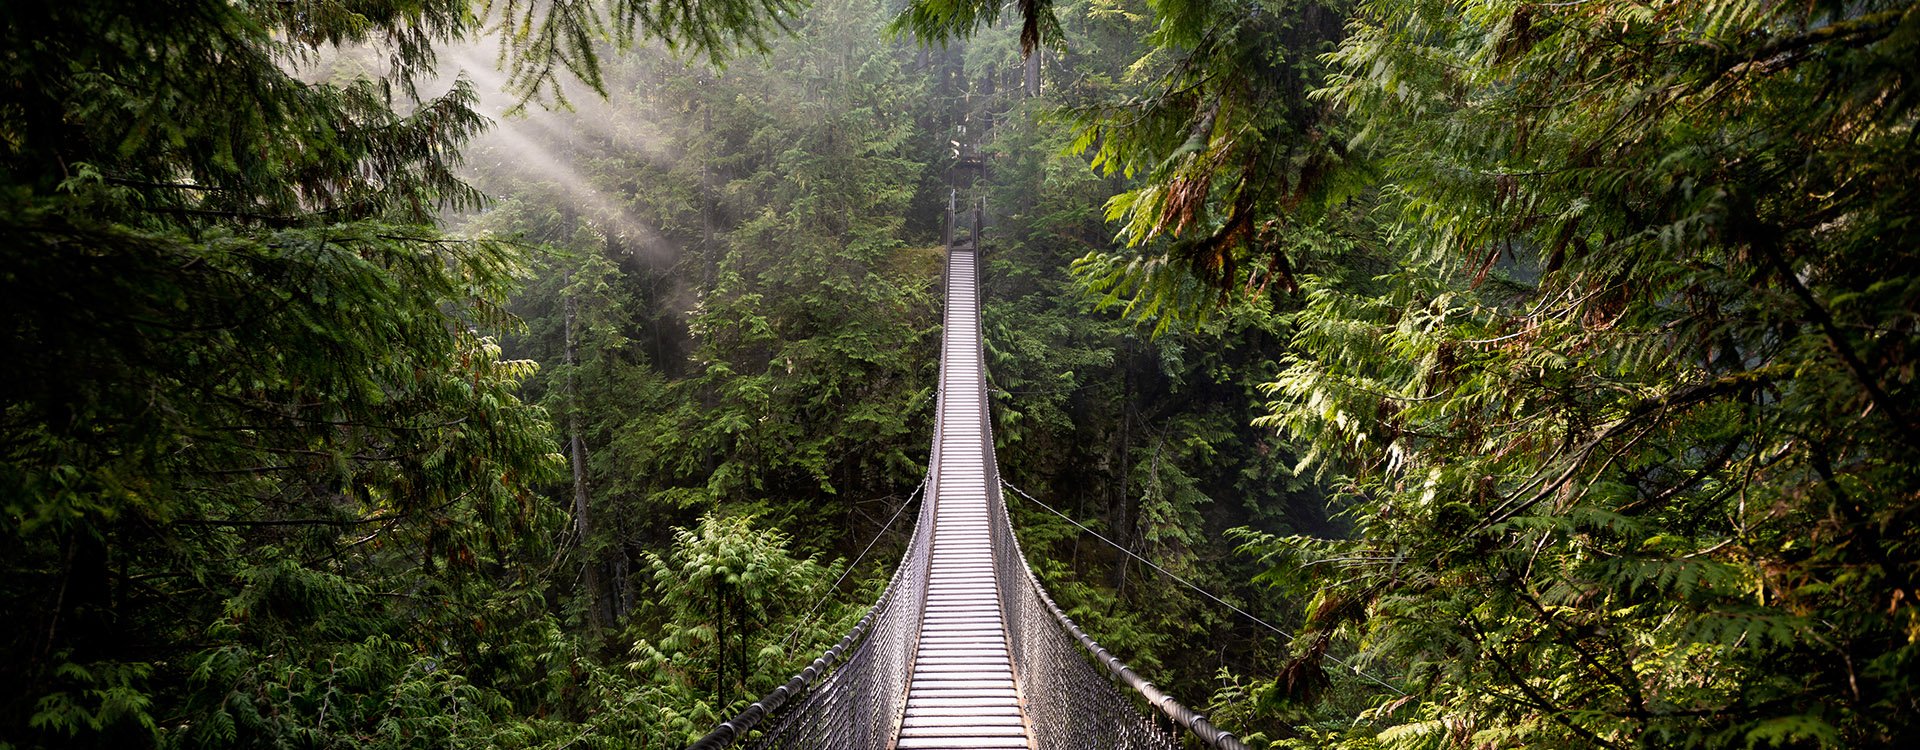 Suspension Bridge in North Vancouver, Canada